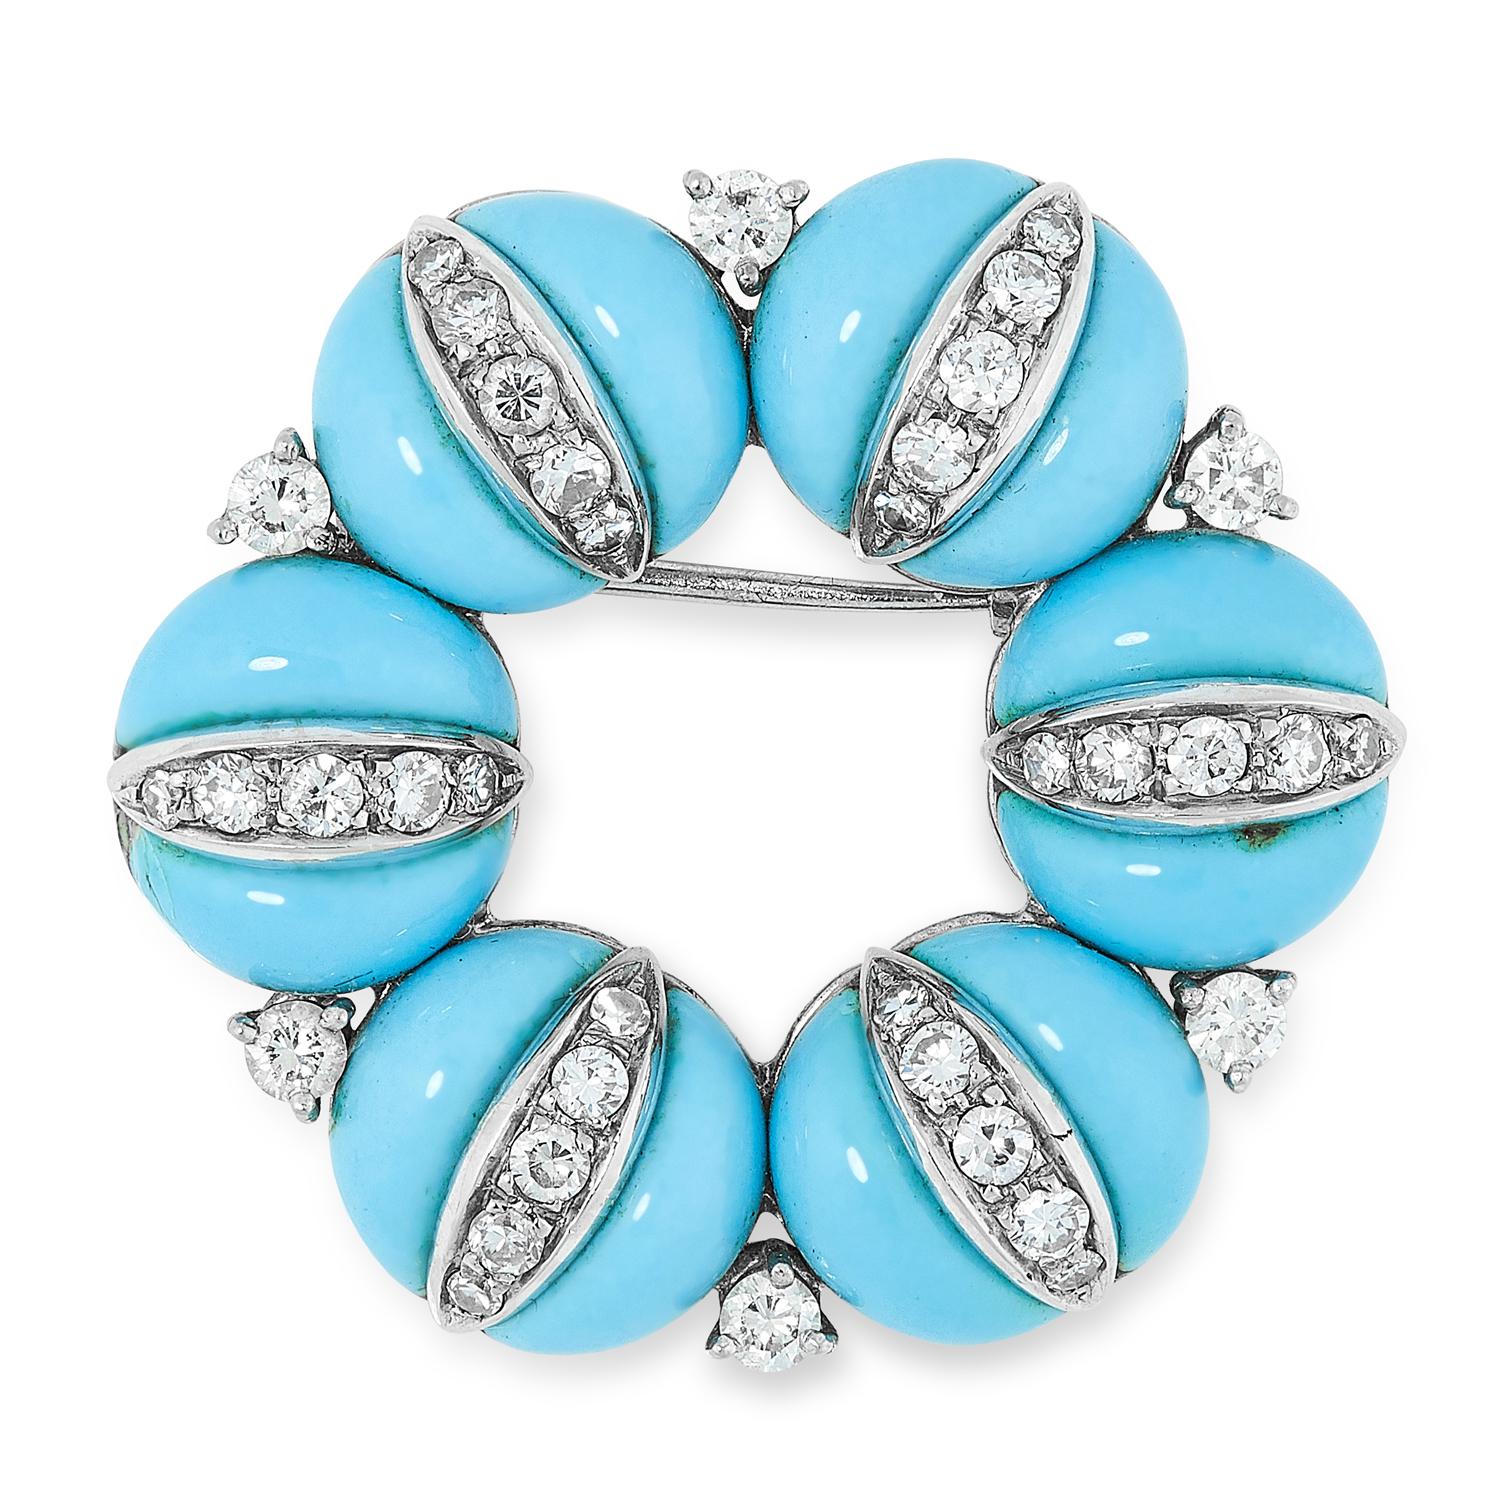 Broche couronne en émail bleu turquoise et diamants en or blanc et jaune 18 carats, Tiffany & Co., Italie, années 1960. De conception circulaire ajourée, ce bijou est composé de six segments circulaires bombés rehaussés d'émail bleu et rehaussés de